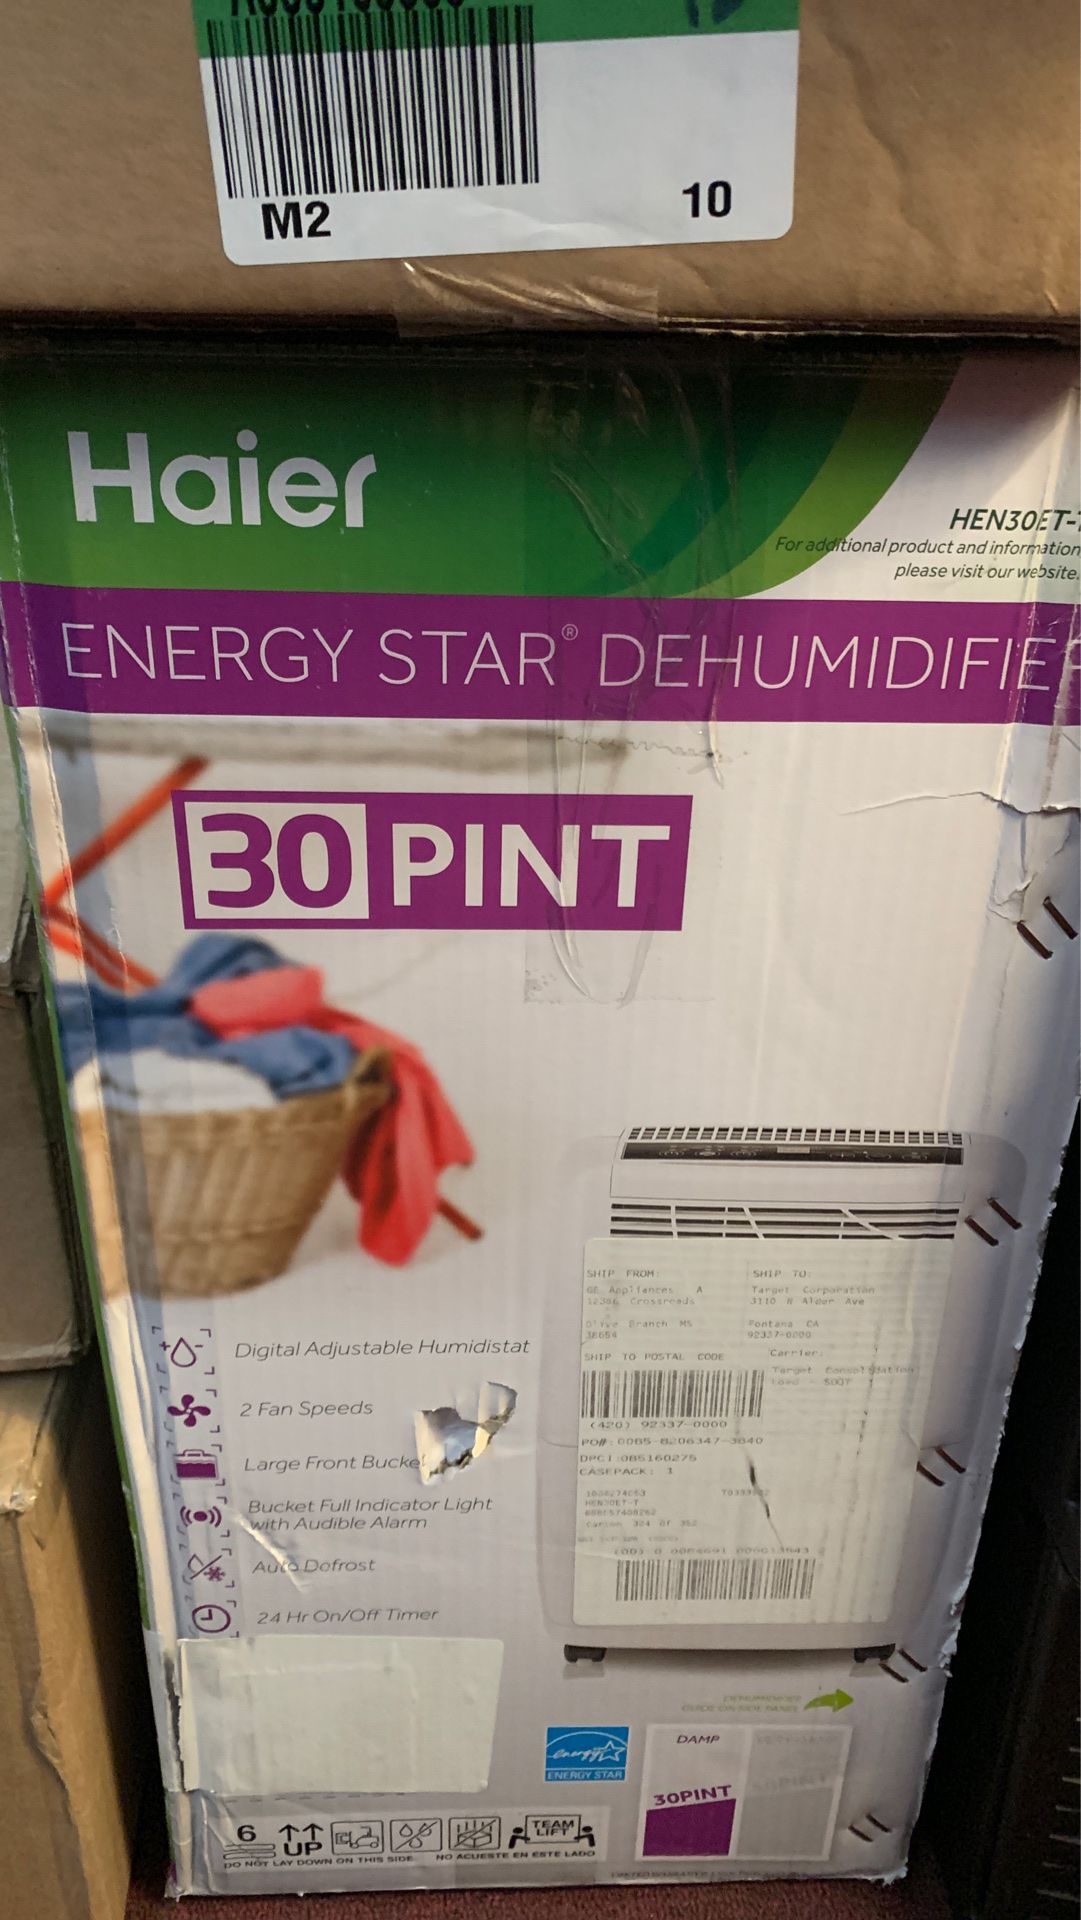 Haier Energy Star Dehumidifier (30 pint)